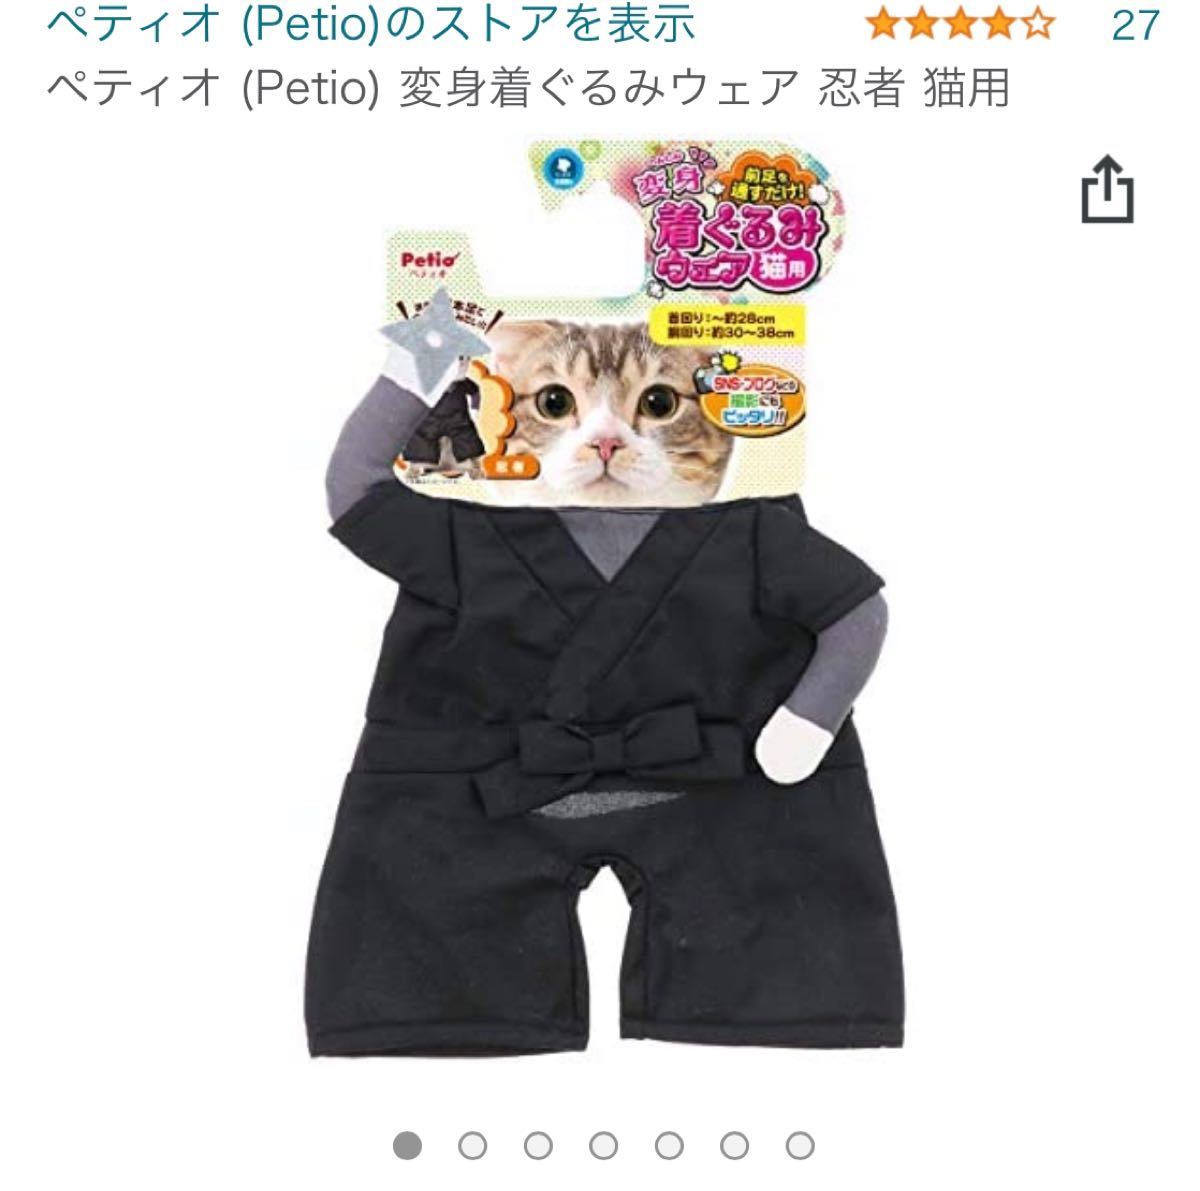 新品☆ペティオ 猫用変身着ぐるみウェア 忍者